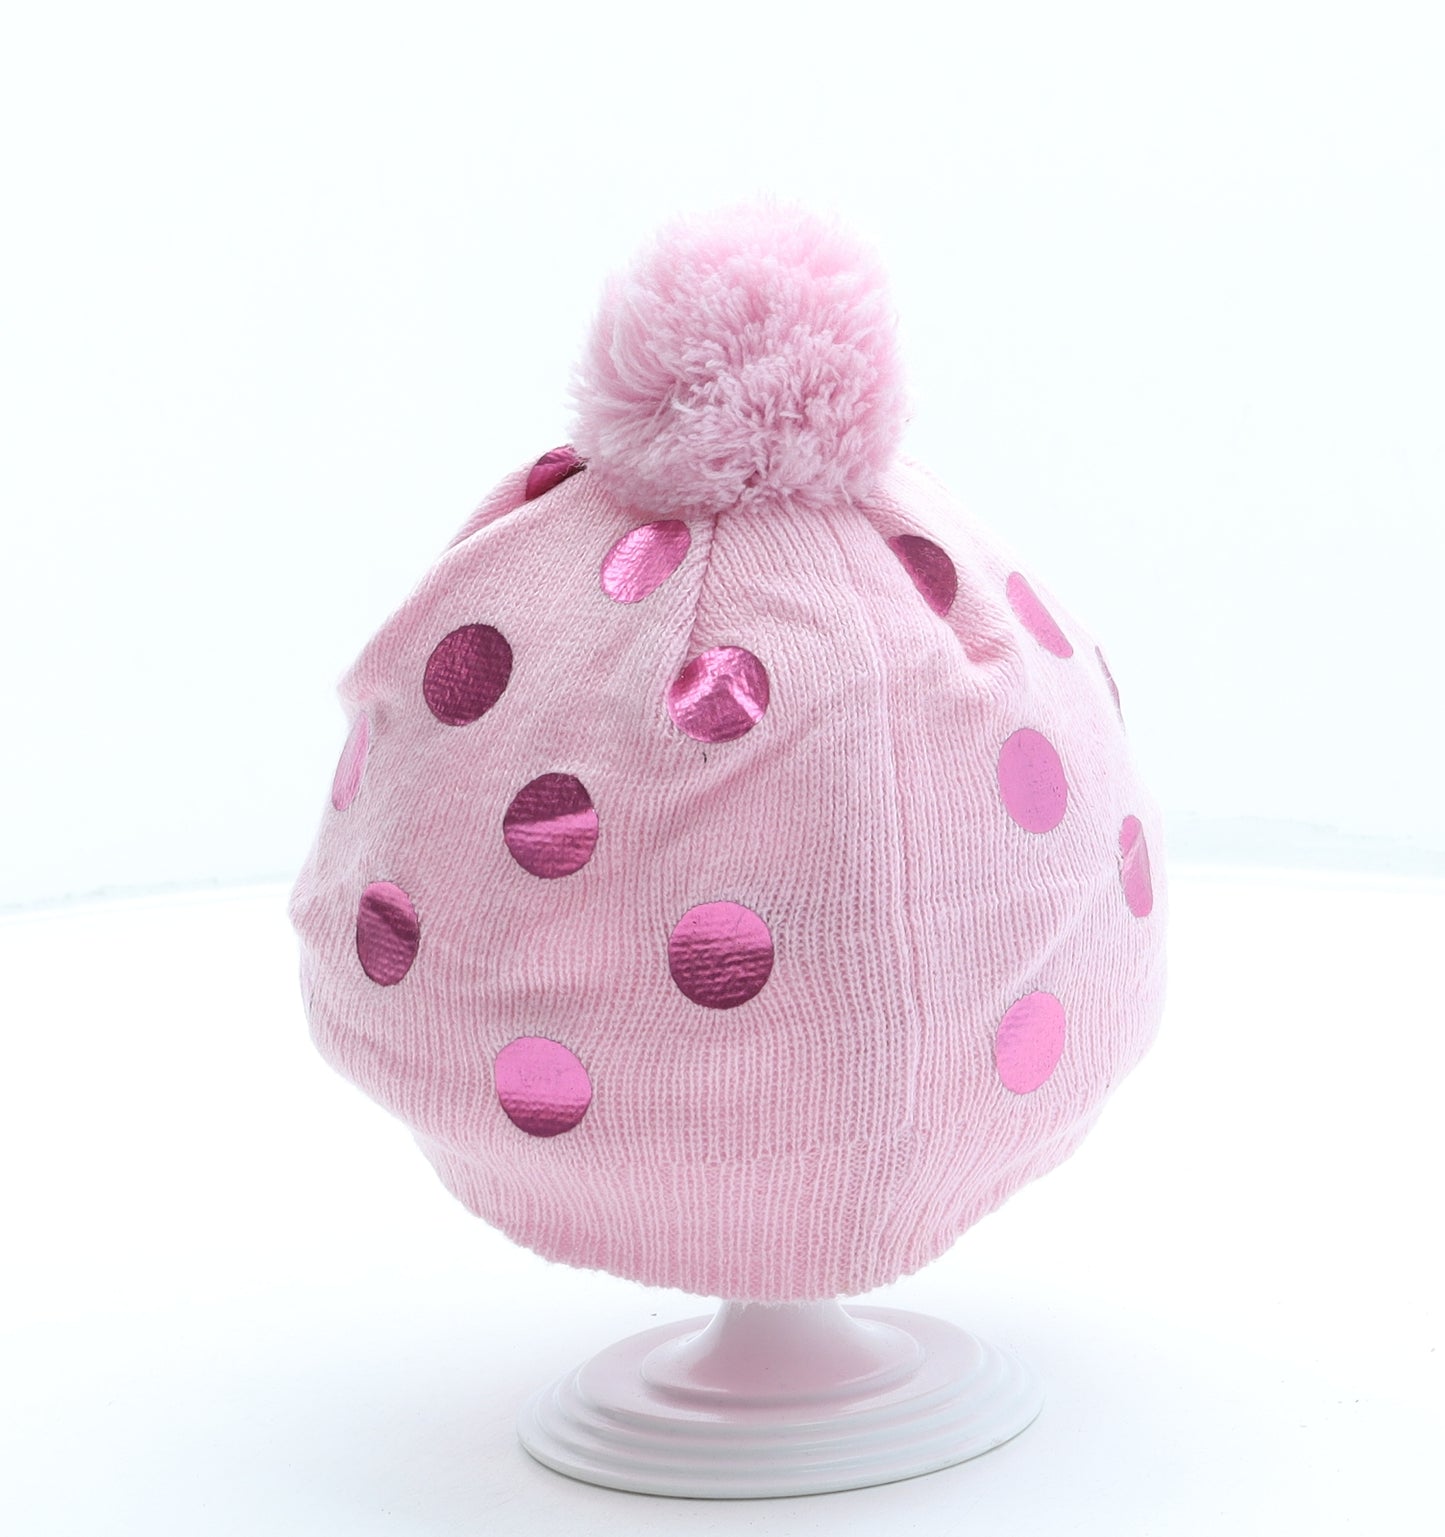 Hello Kitty Girls Pink Polka Dot Acrylic Bobble Hat One Size - Pom Pom